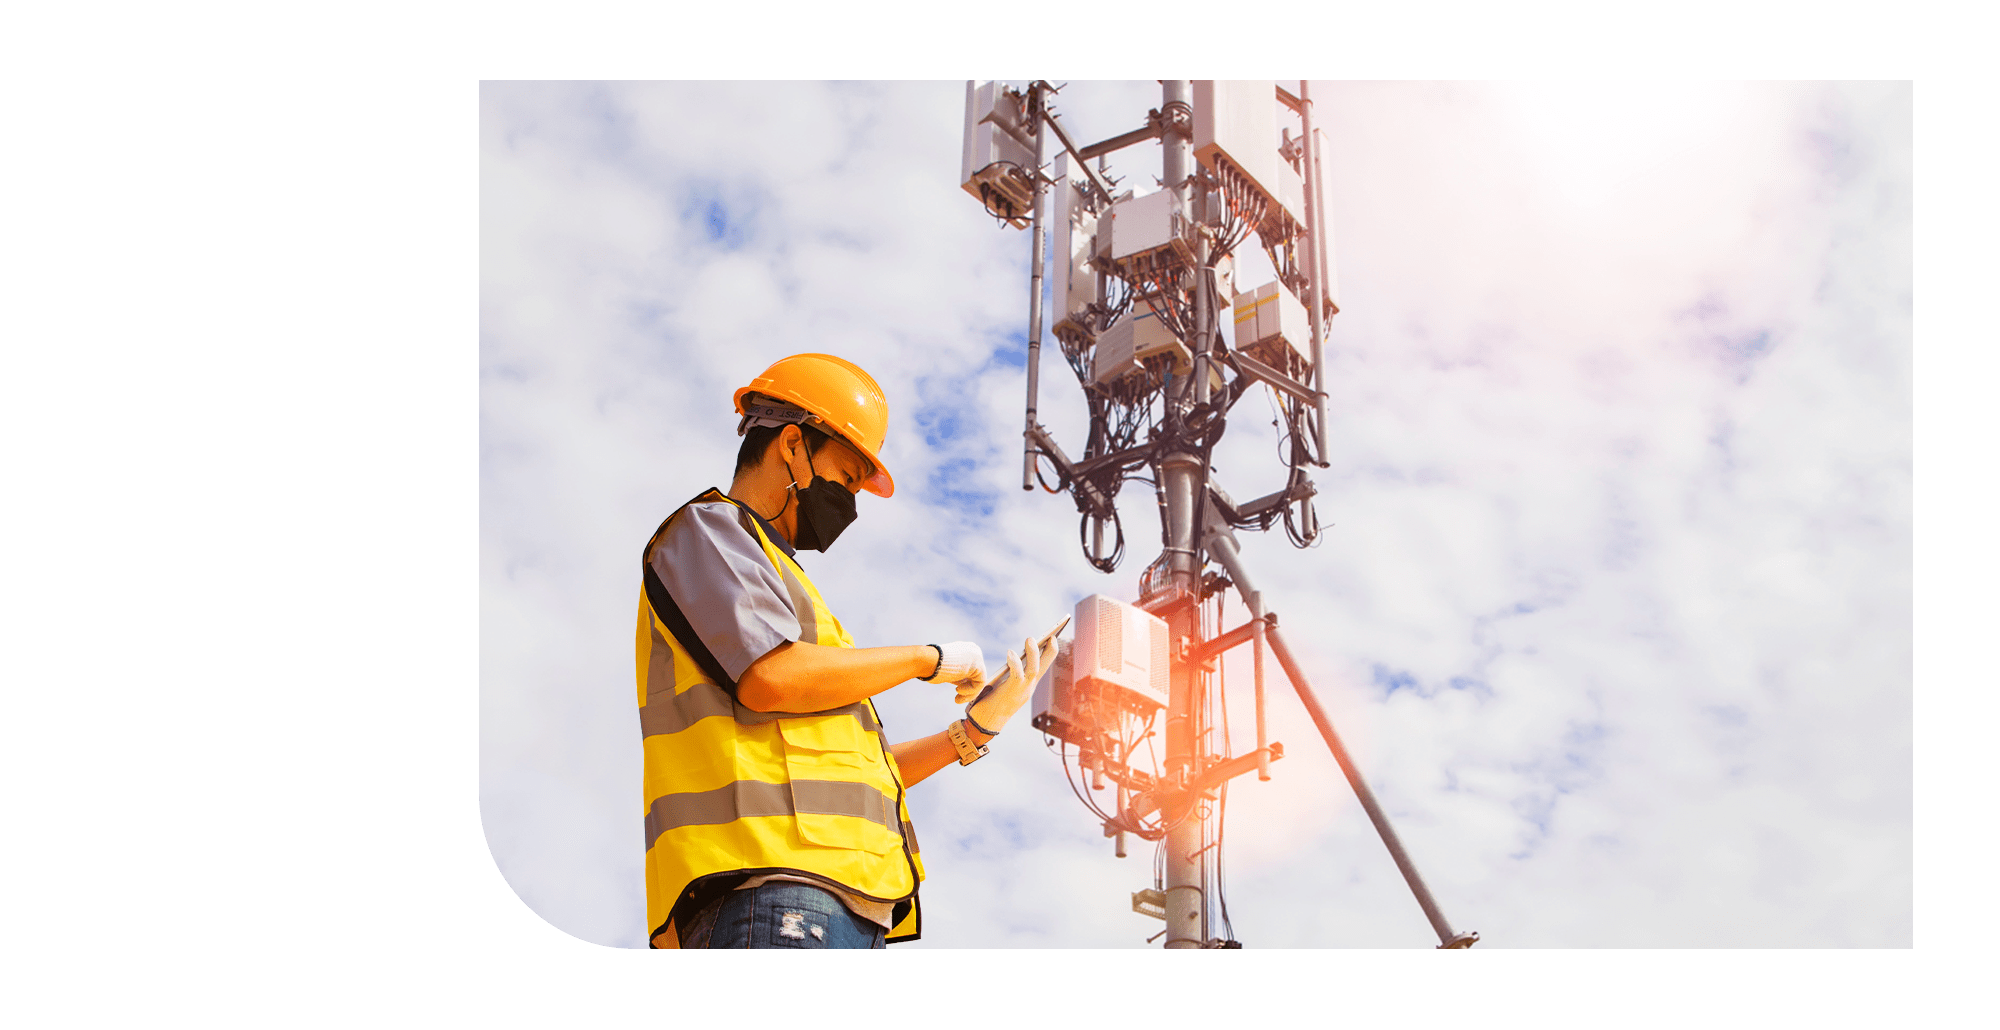 モバイル基地局工事など、電気・通信サービスに関わる工事を提供しています。